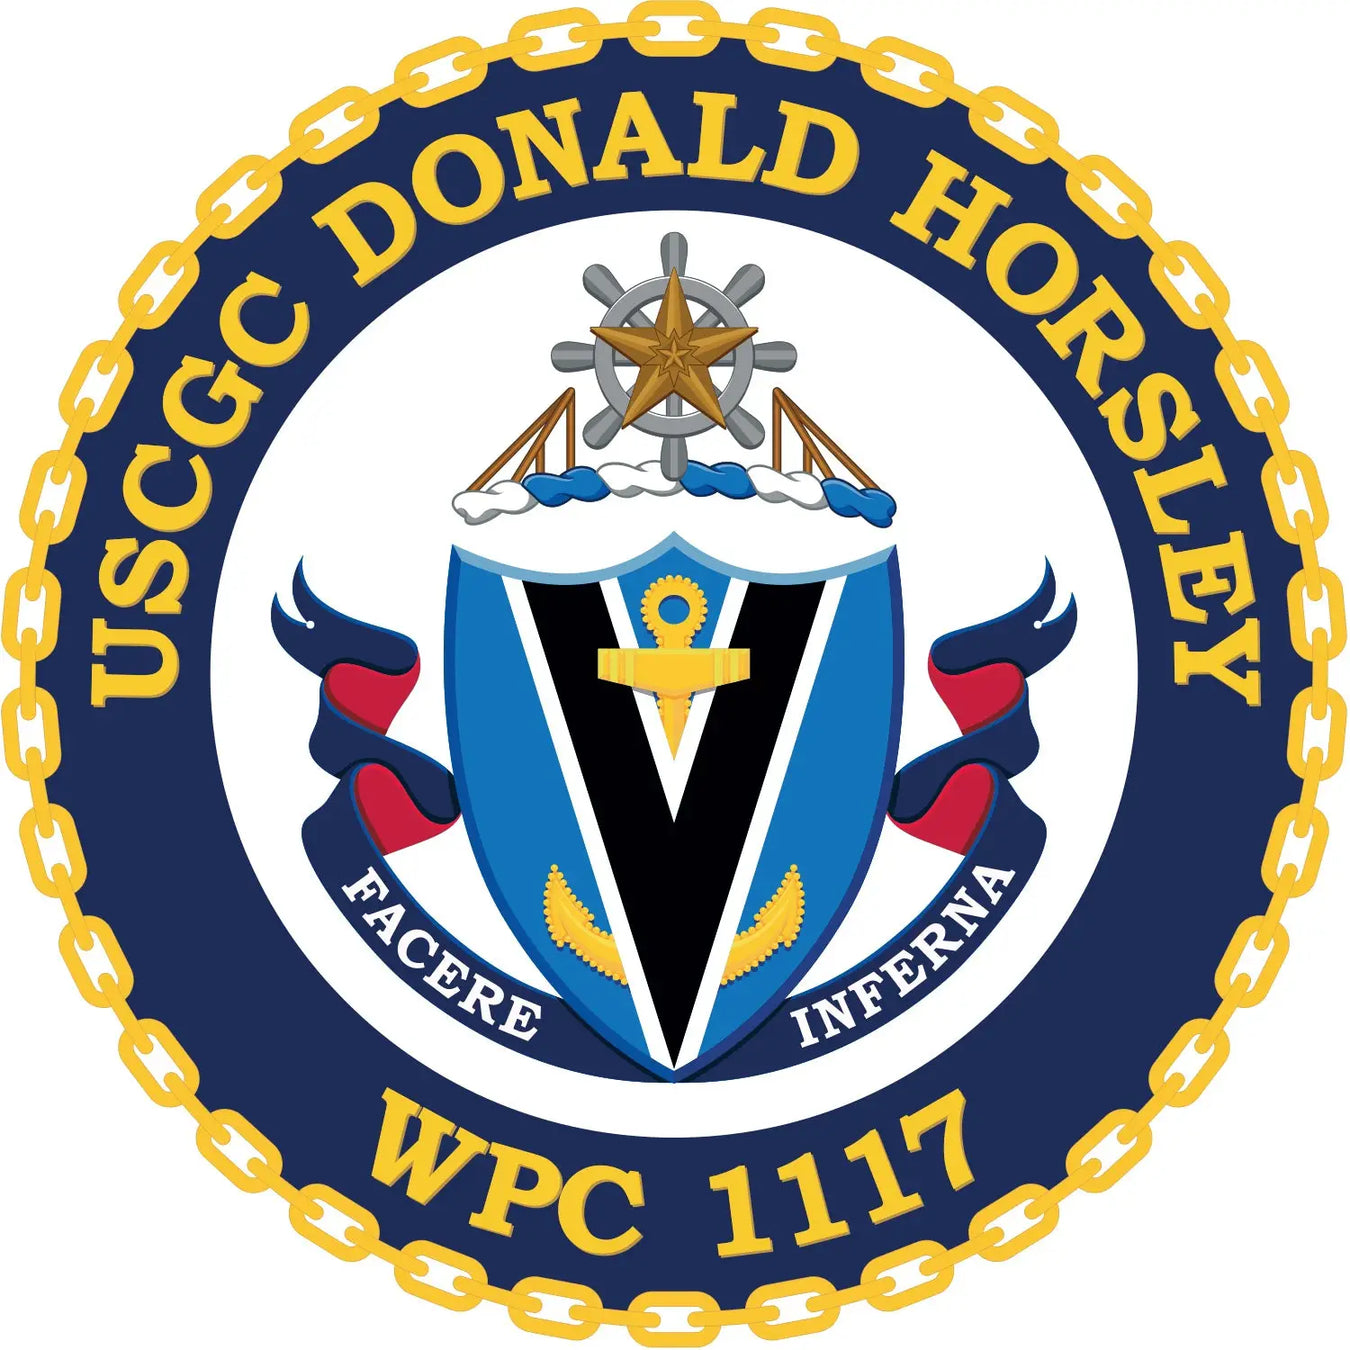 USCGC Donald Horsley (WPC-1117)